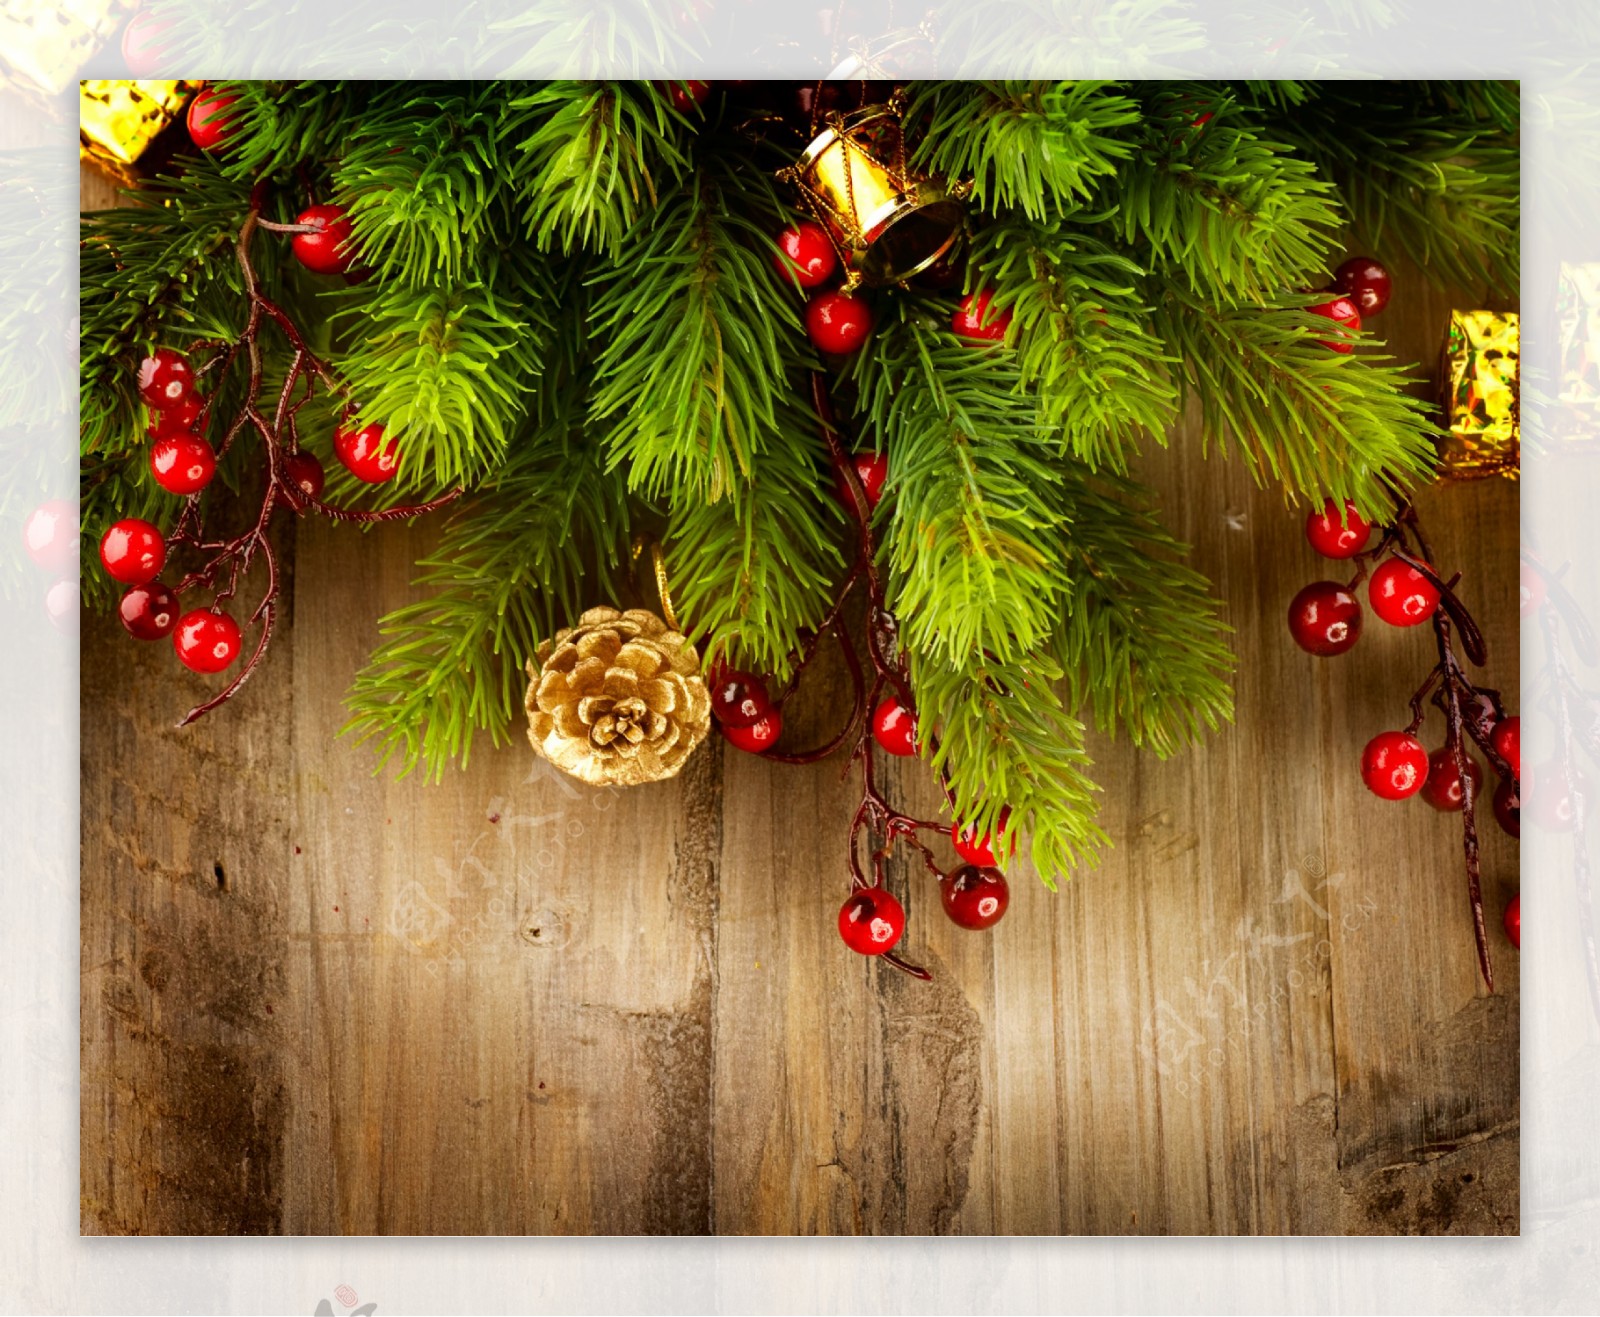 圣诞树枝和木板